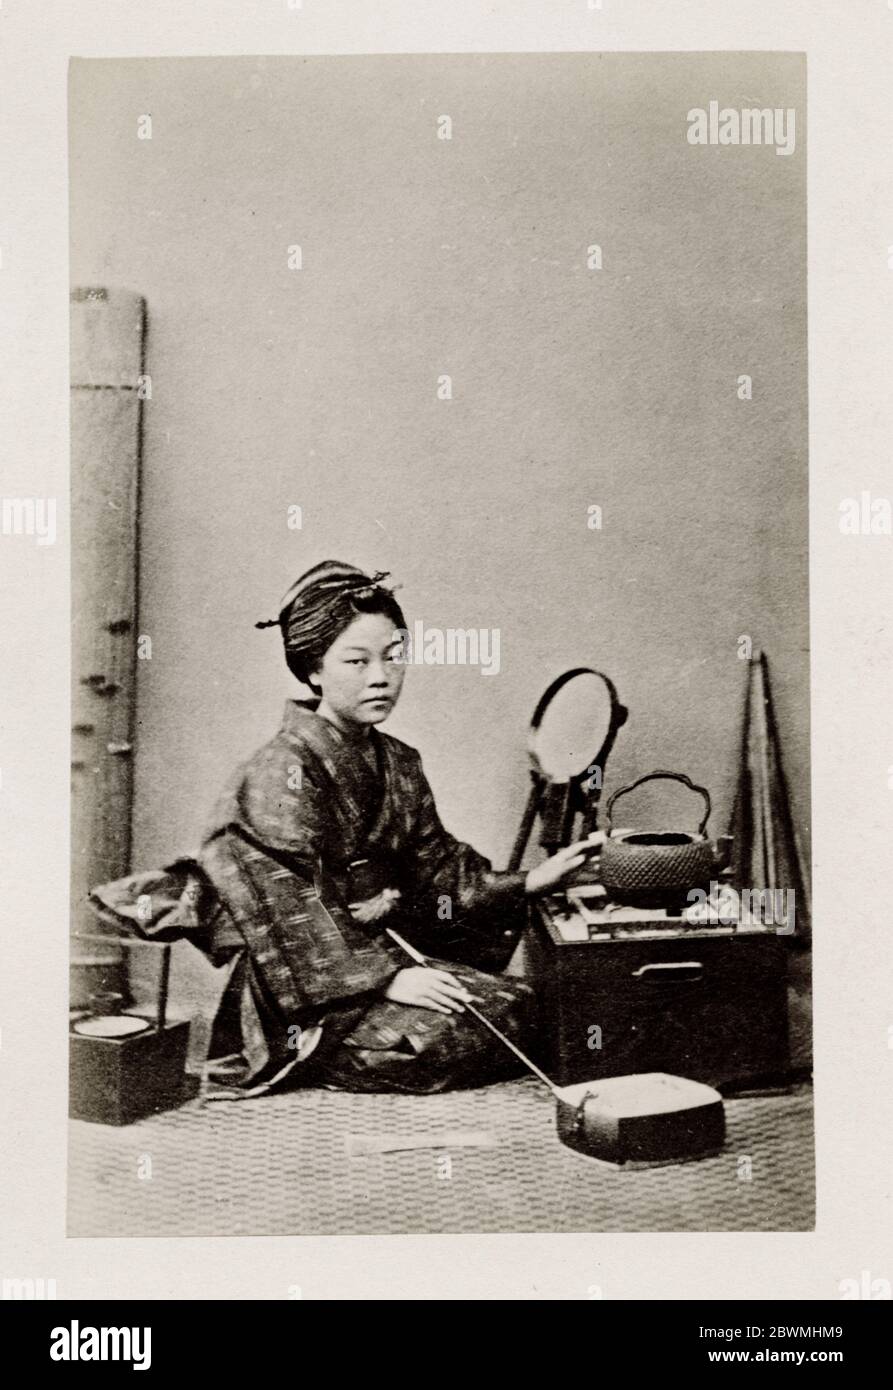 Vintage 19. Jahrhundert Fotografie - frühe fotografische Porträt aus Japan, wahrscheinlich das Werk der japanischen Fotografin Shimooka Renjo - Frau mit Spiegel. Stockfoto